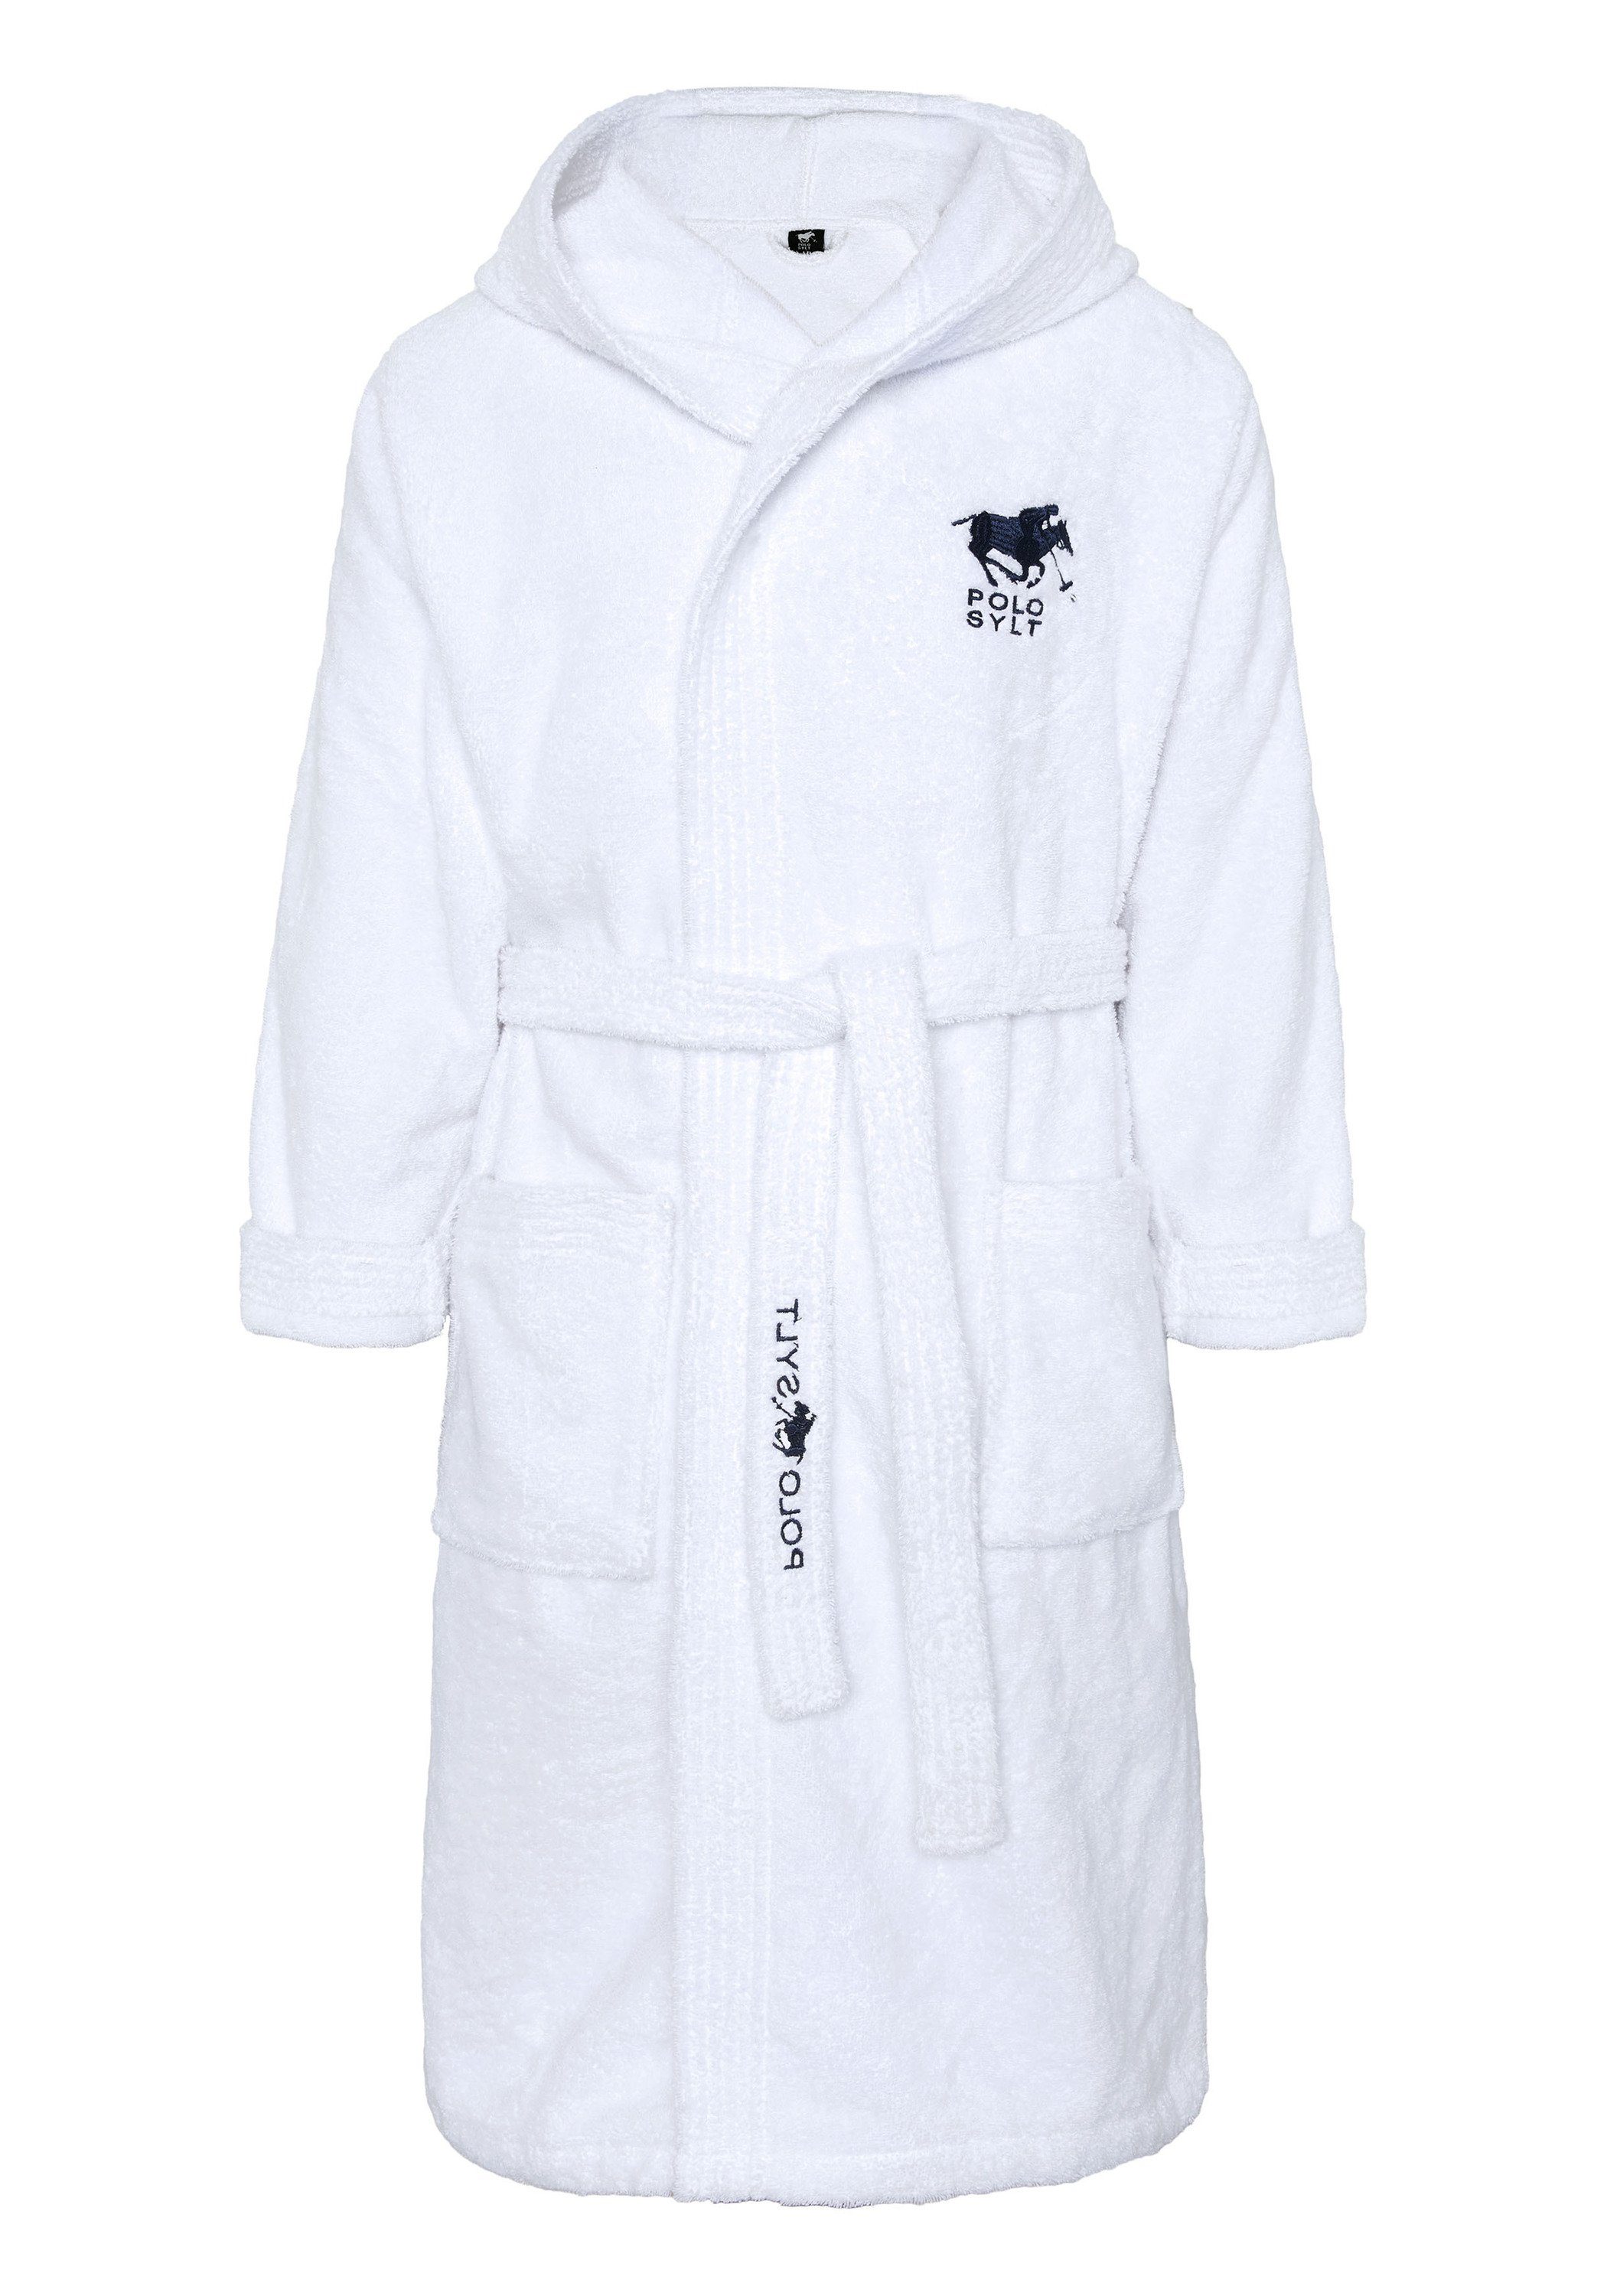 Polo Sylt Bademantel mit Logos, Gürtel und aufgesetzten Taschen, langform, Baumwolle, Gürtel weiß